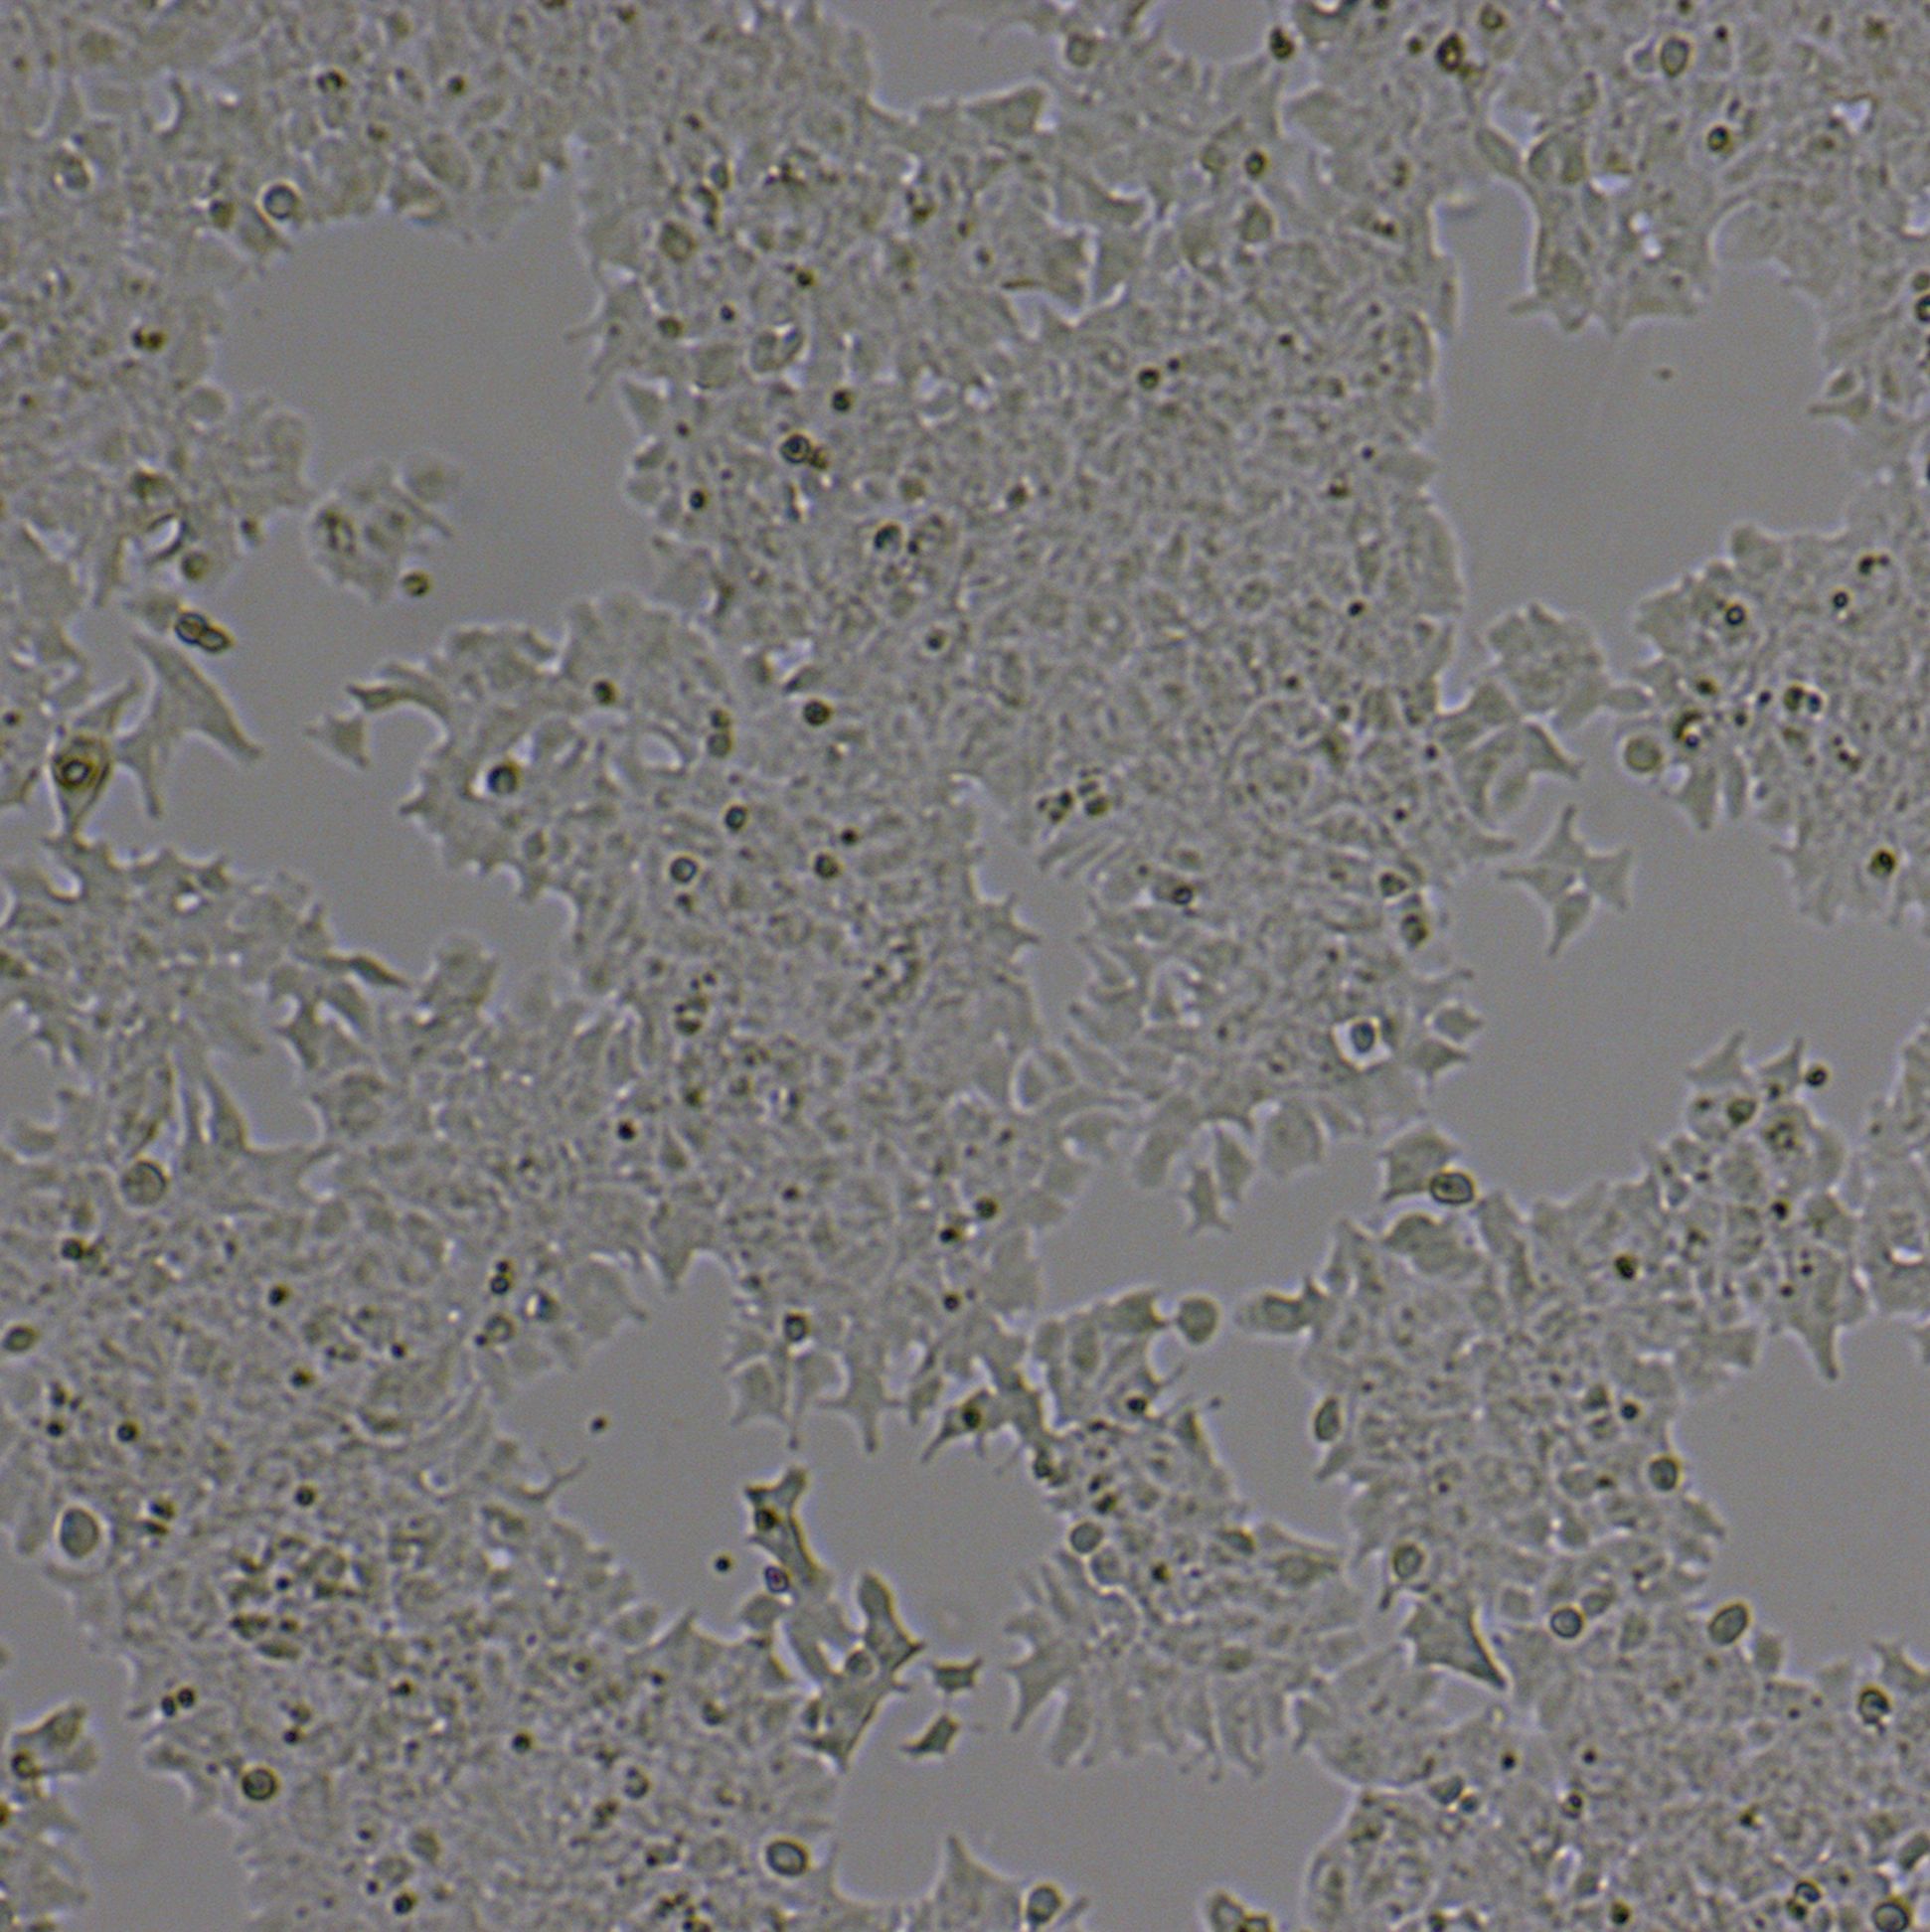 STC-1[stc1;stc 1]小鼠小肠内分泌细胞